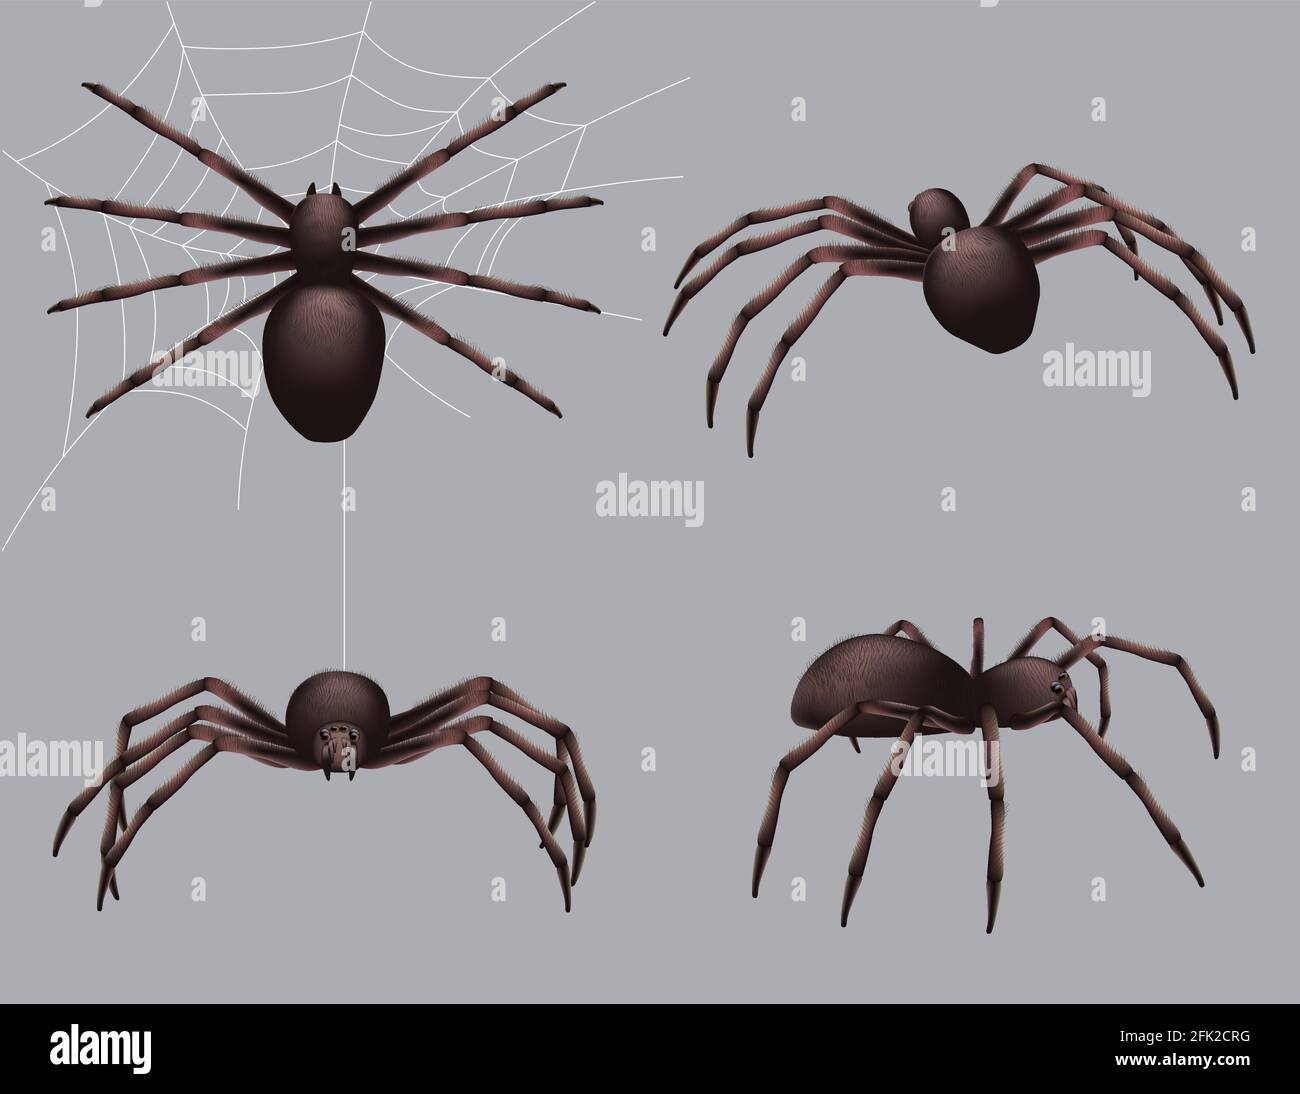 Spider realistisch. Natur Insekten kriechen Gift schwarz Angst Spinne Vektor Gefahr Sammlung Stock Vektor